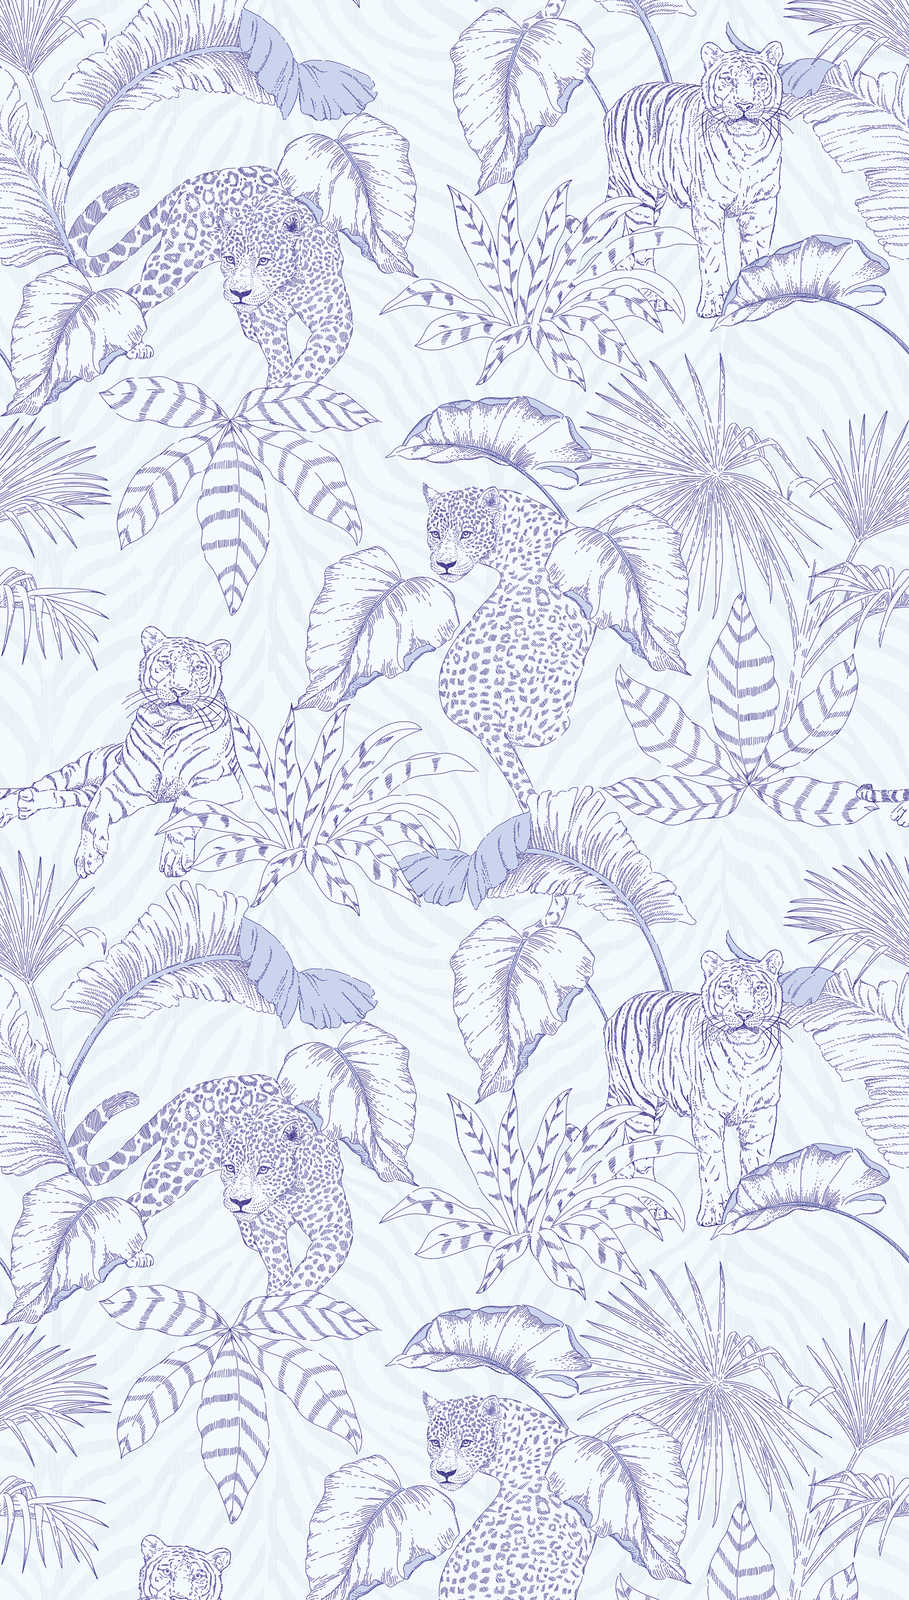             Papel pintado tejido-no tejido con motivo de jungla con tigres y leopardos - morado, blanco
        